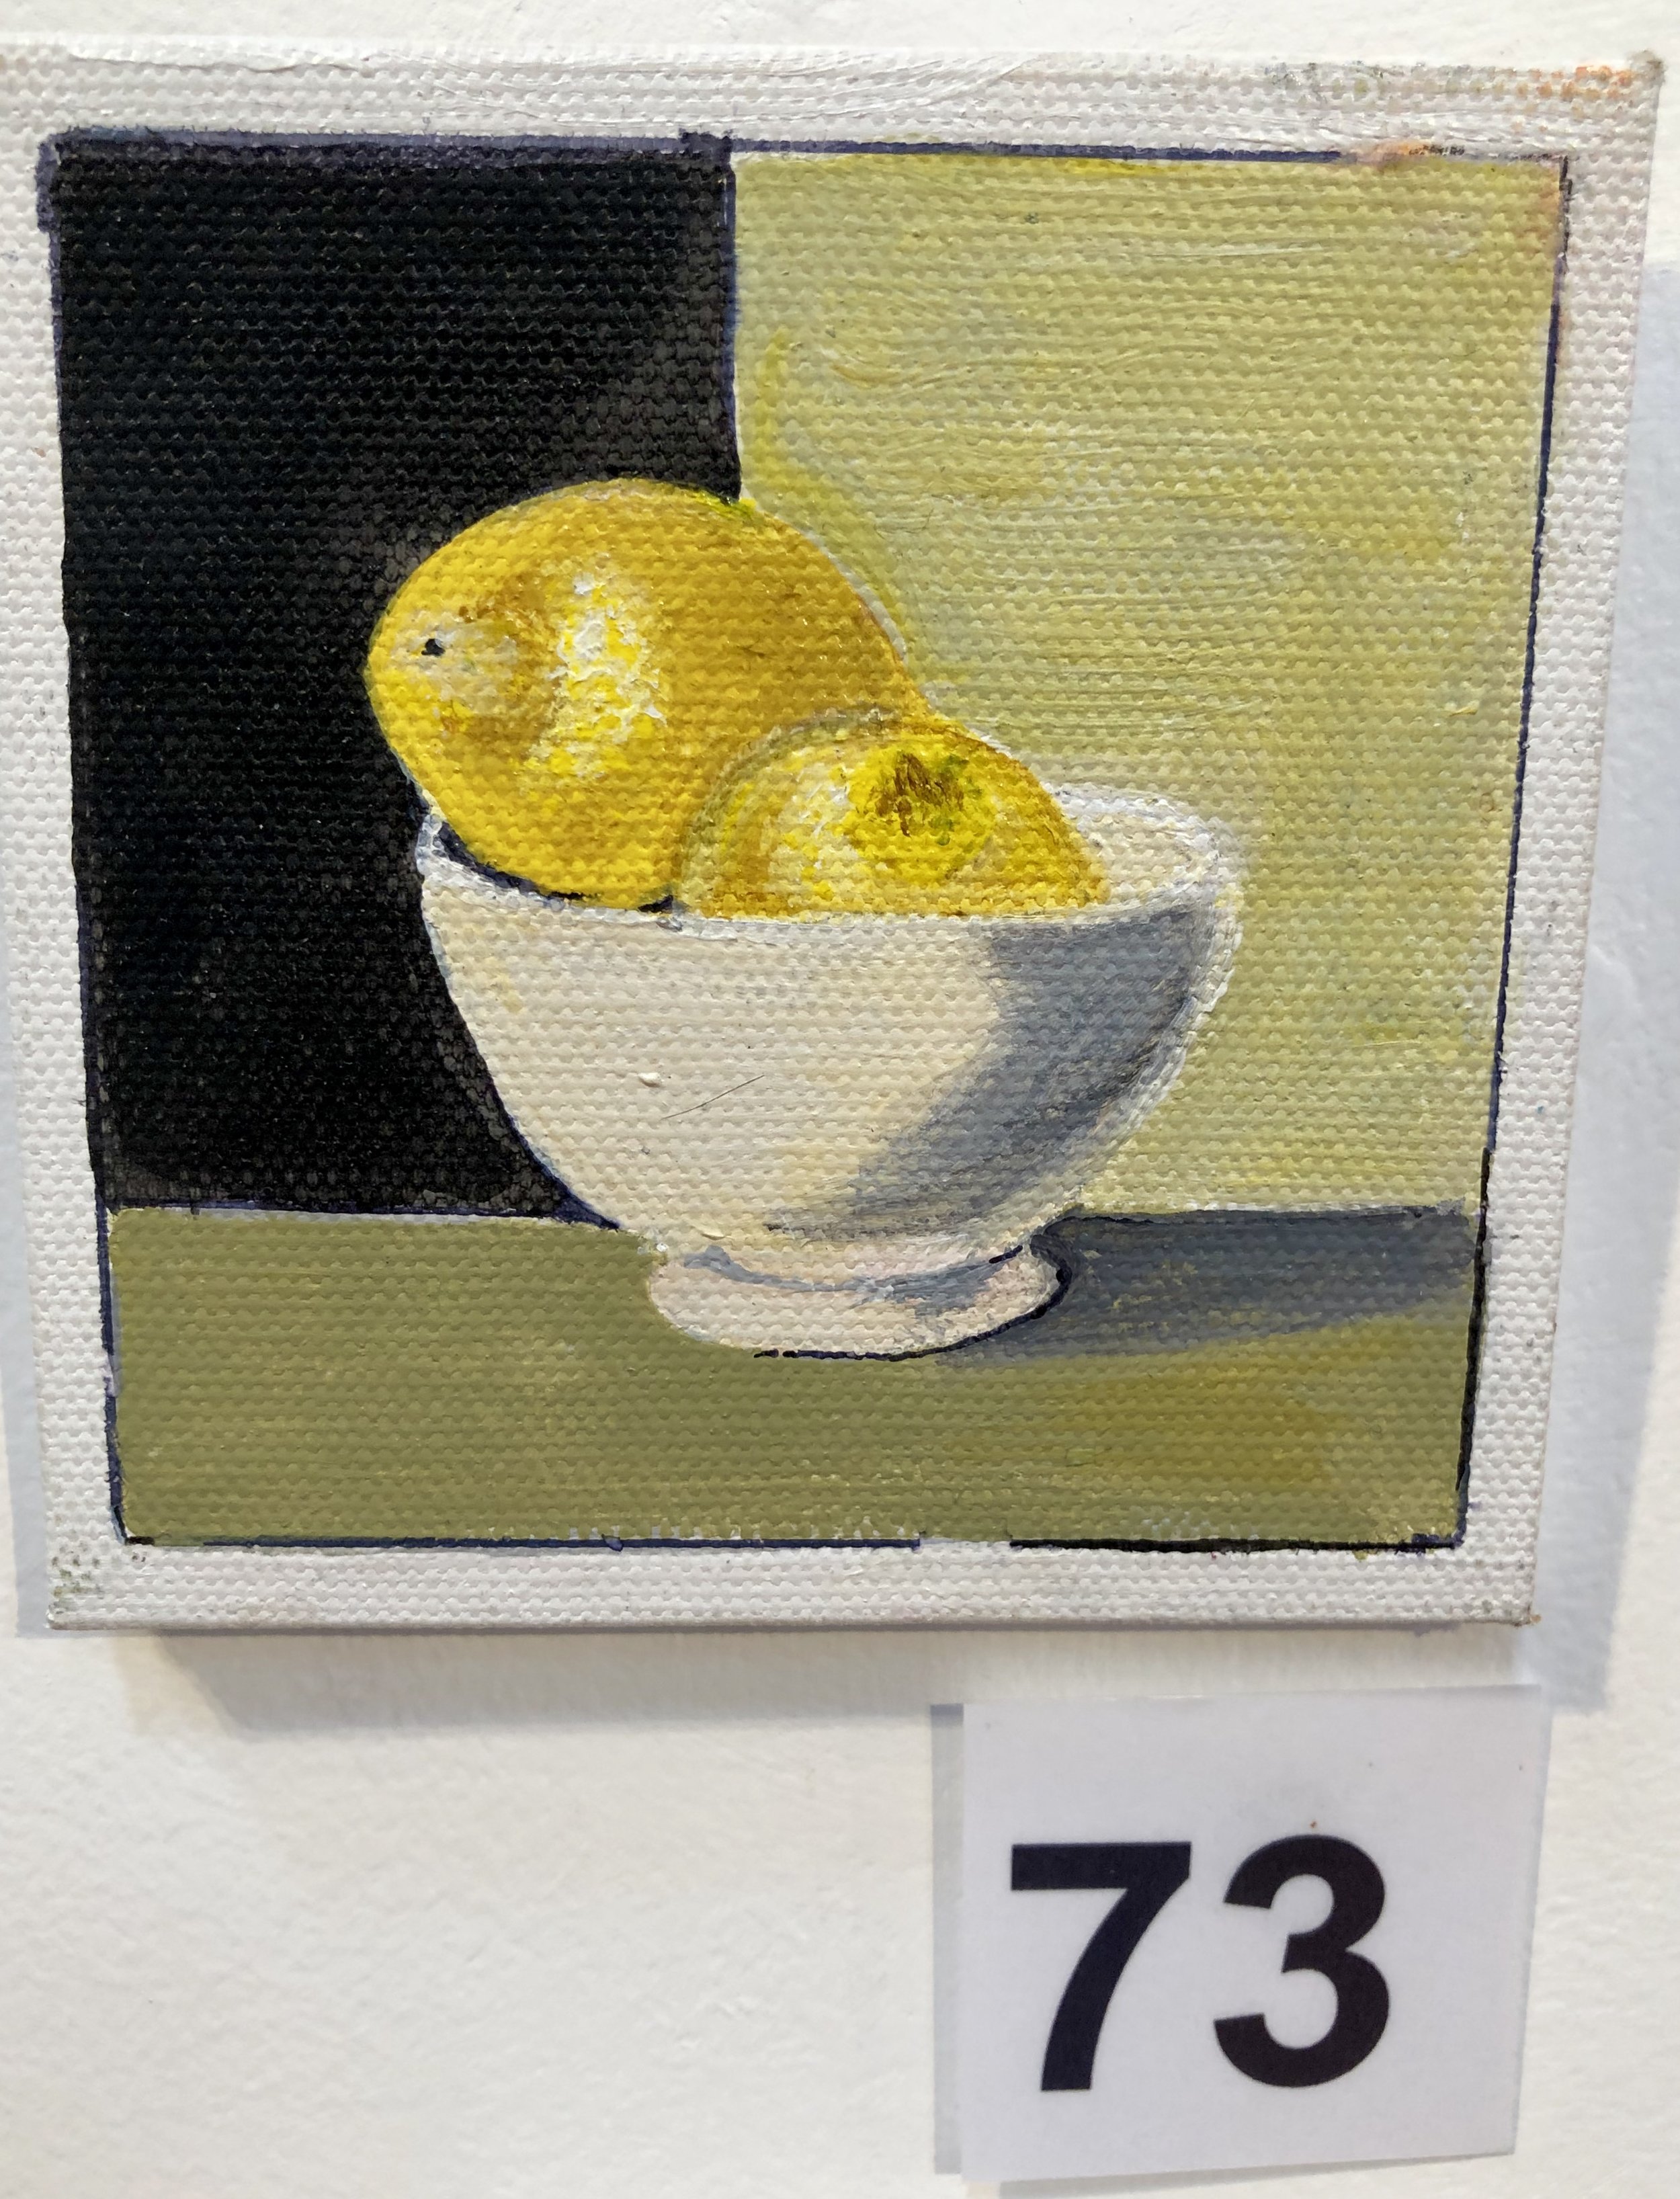 "Lemons in a white bowl" by Kaye Kirkland